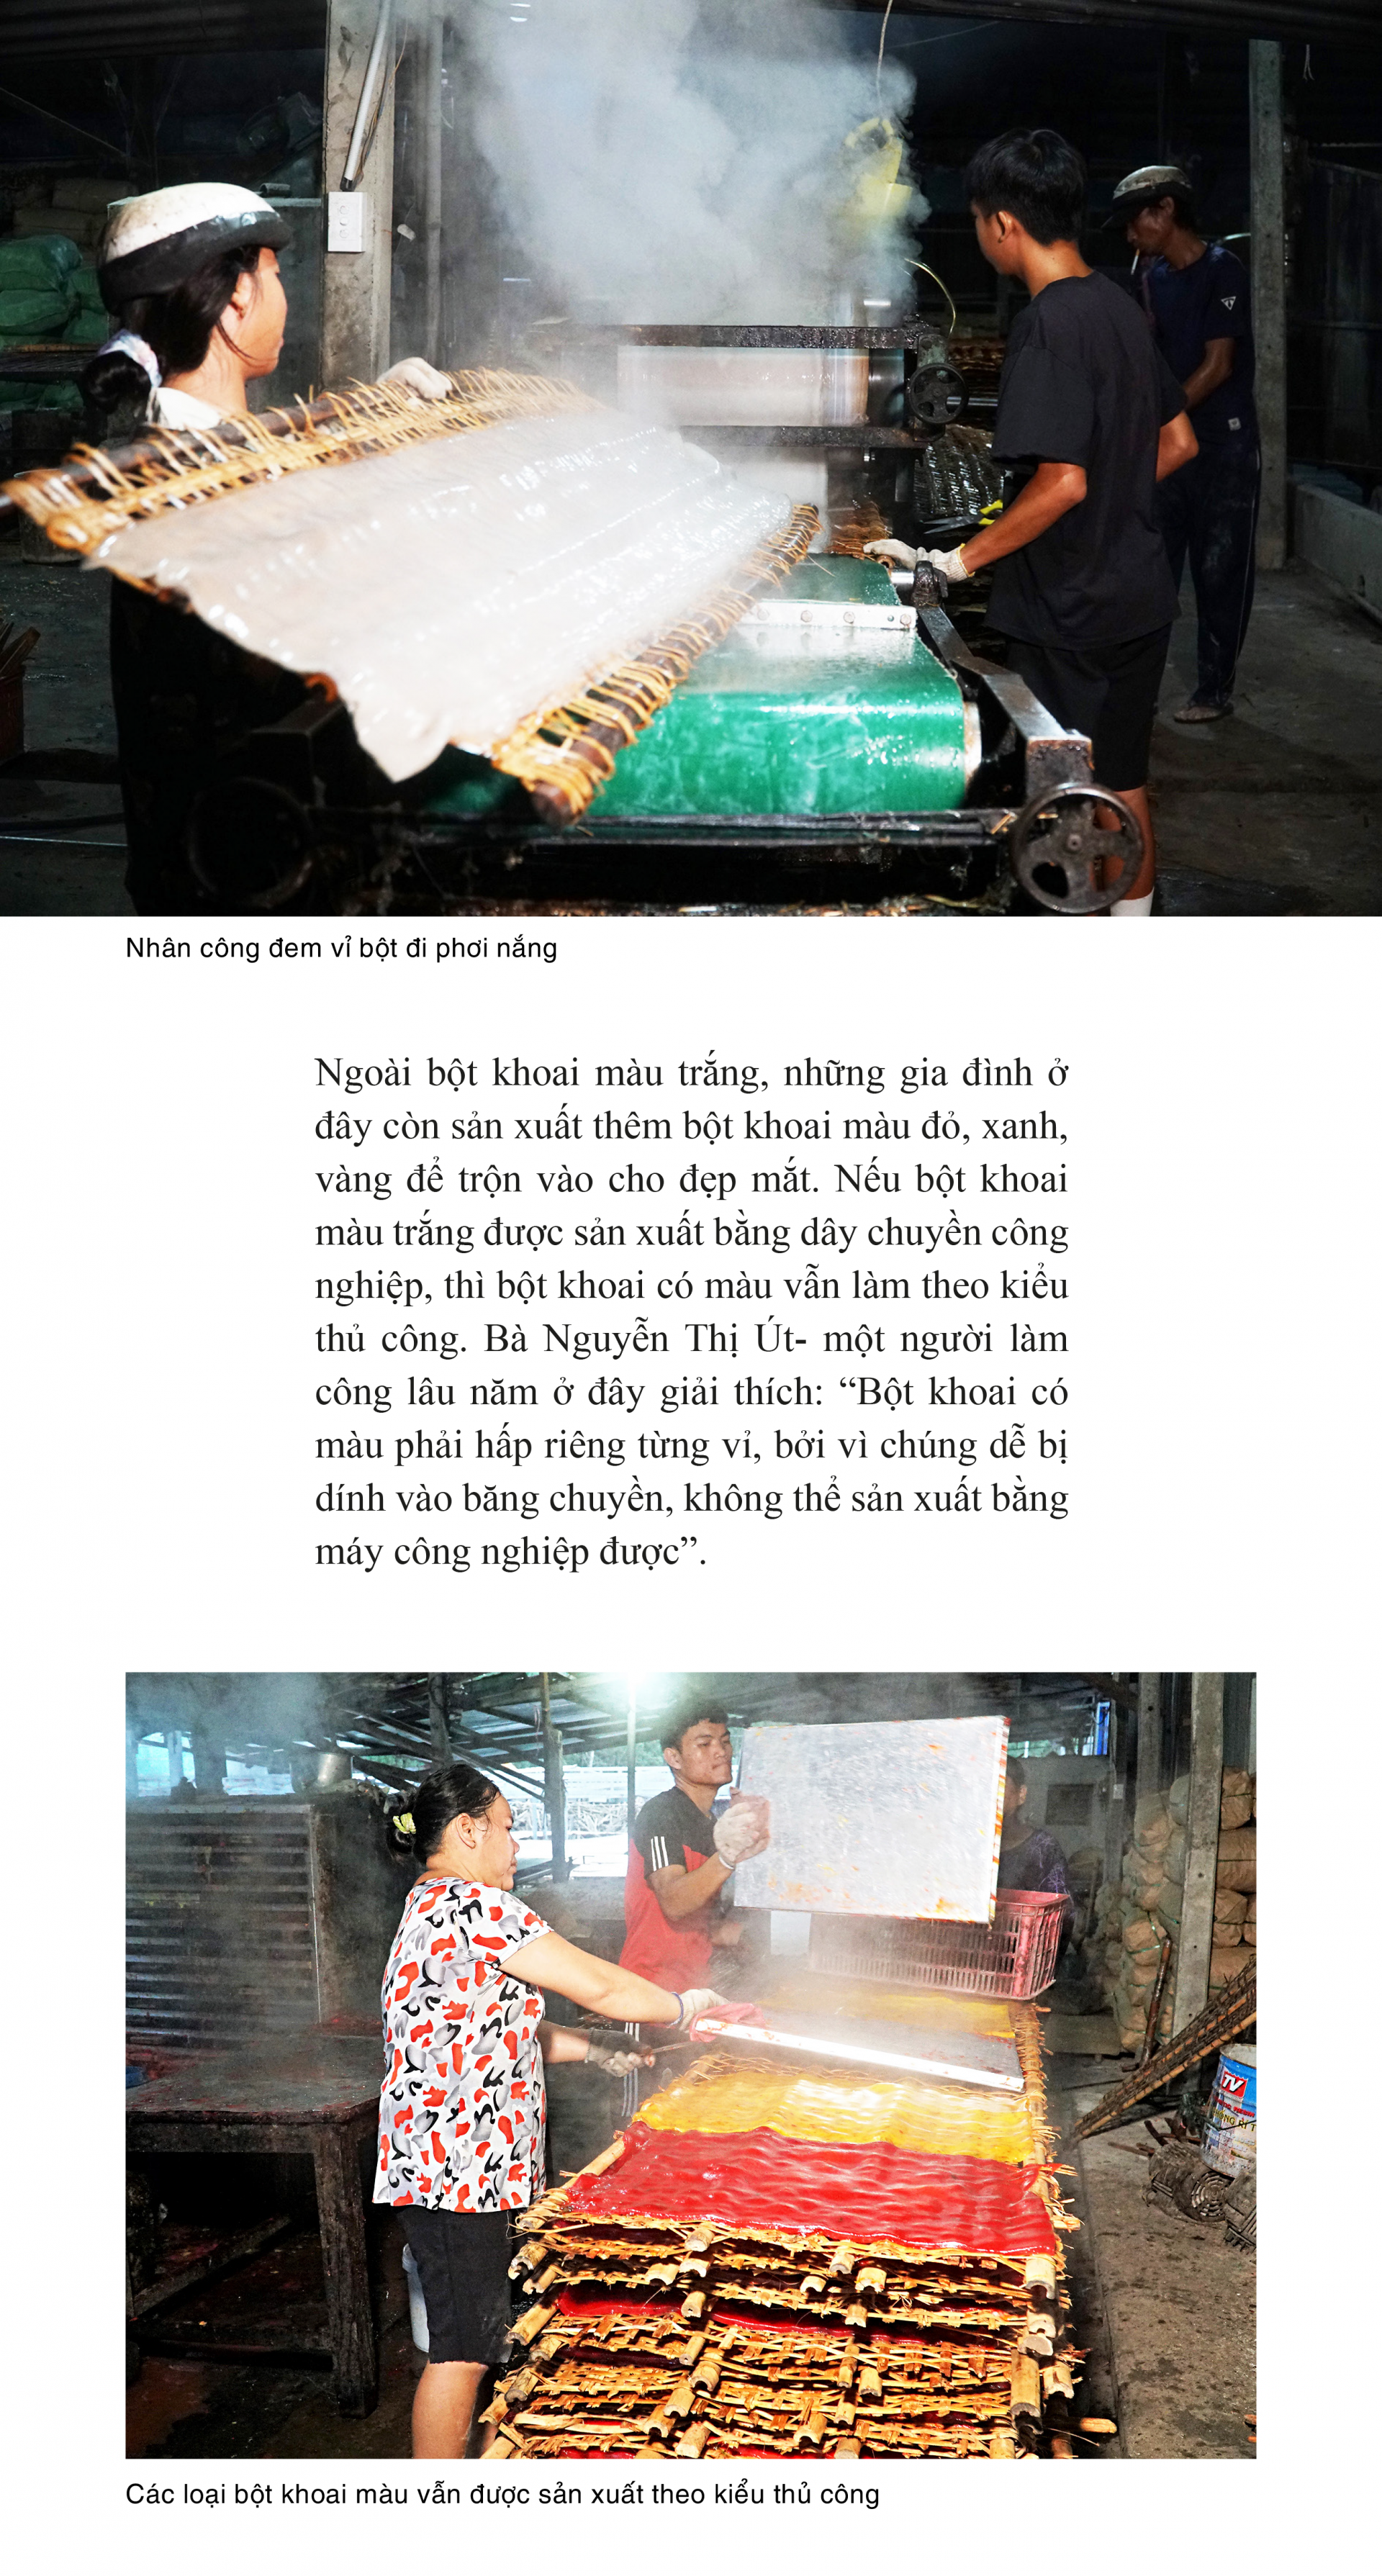 Làng bột khoai- Tiềm năng du lịch ở Tây Ninh